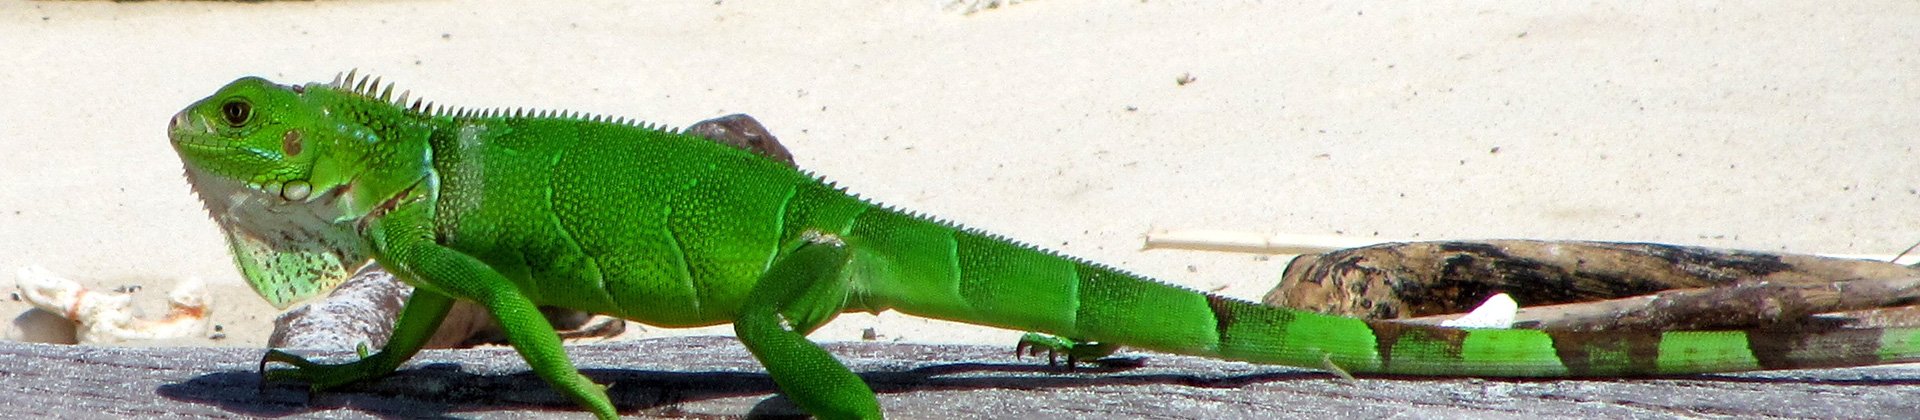 Iguana, Panama